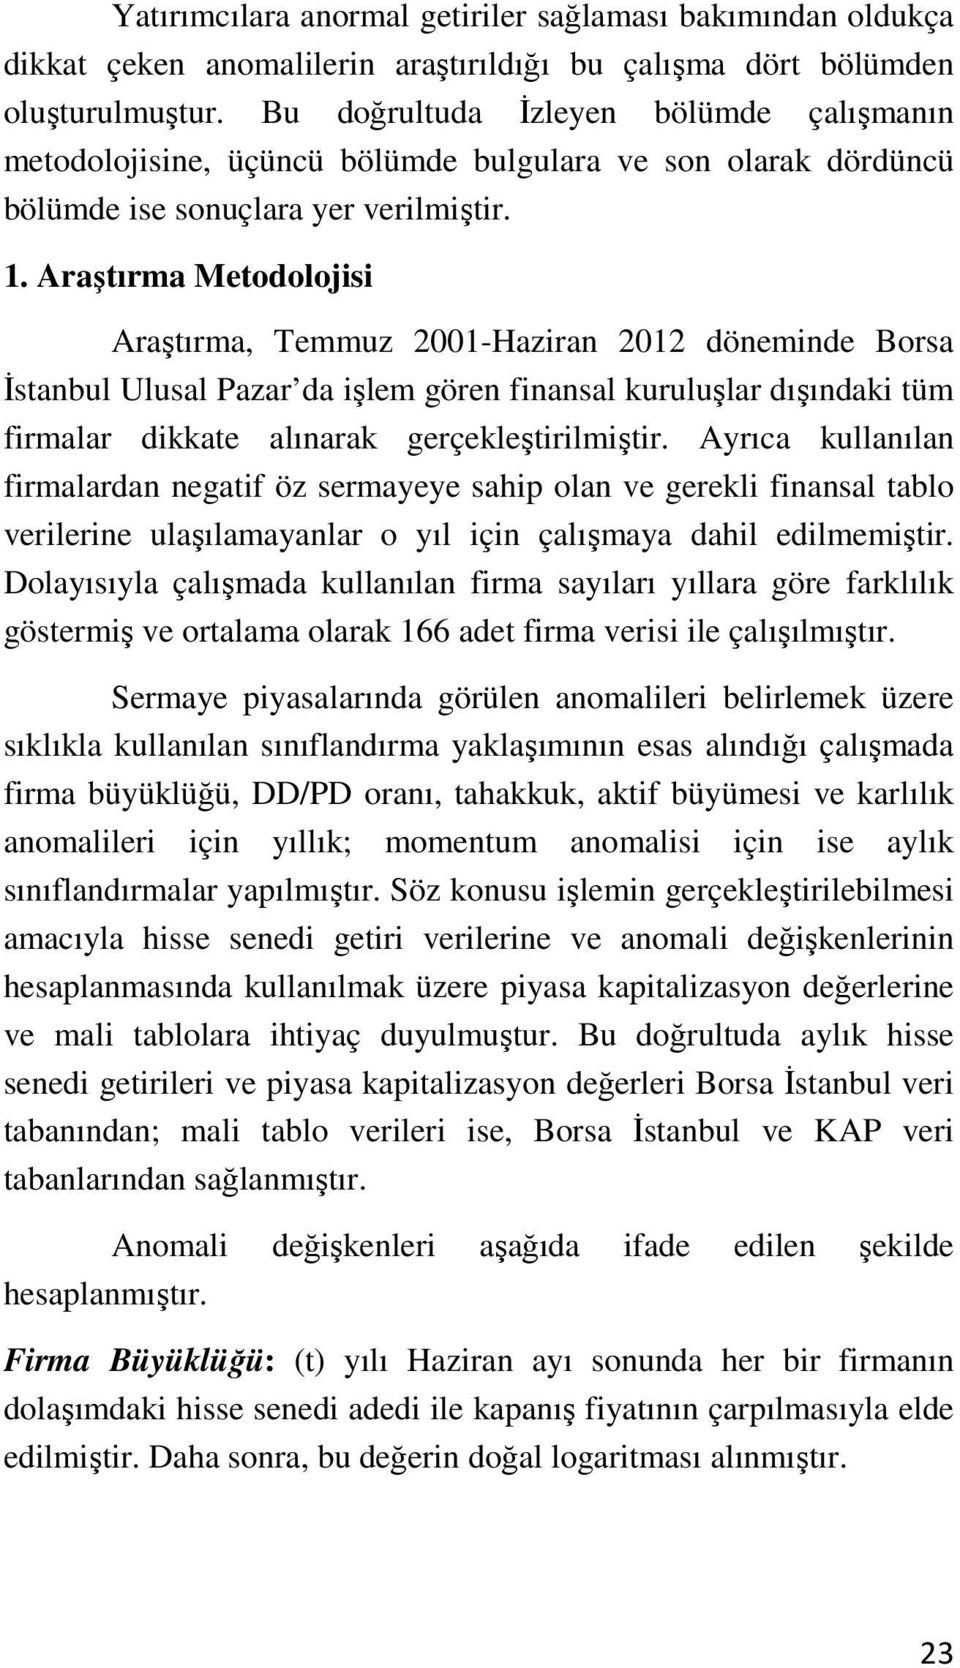 Araştırma Metodolojisi Araştırma, Temmuz 2001-Haziran 2012 döneminde Borsa İstanbul Ulusal Pazar da işlem gören finansal kuruluşlar dışındaki tüm firmalar dikkate alınarak gerçekleştirilmiştir.